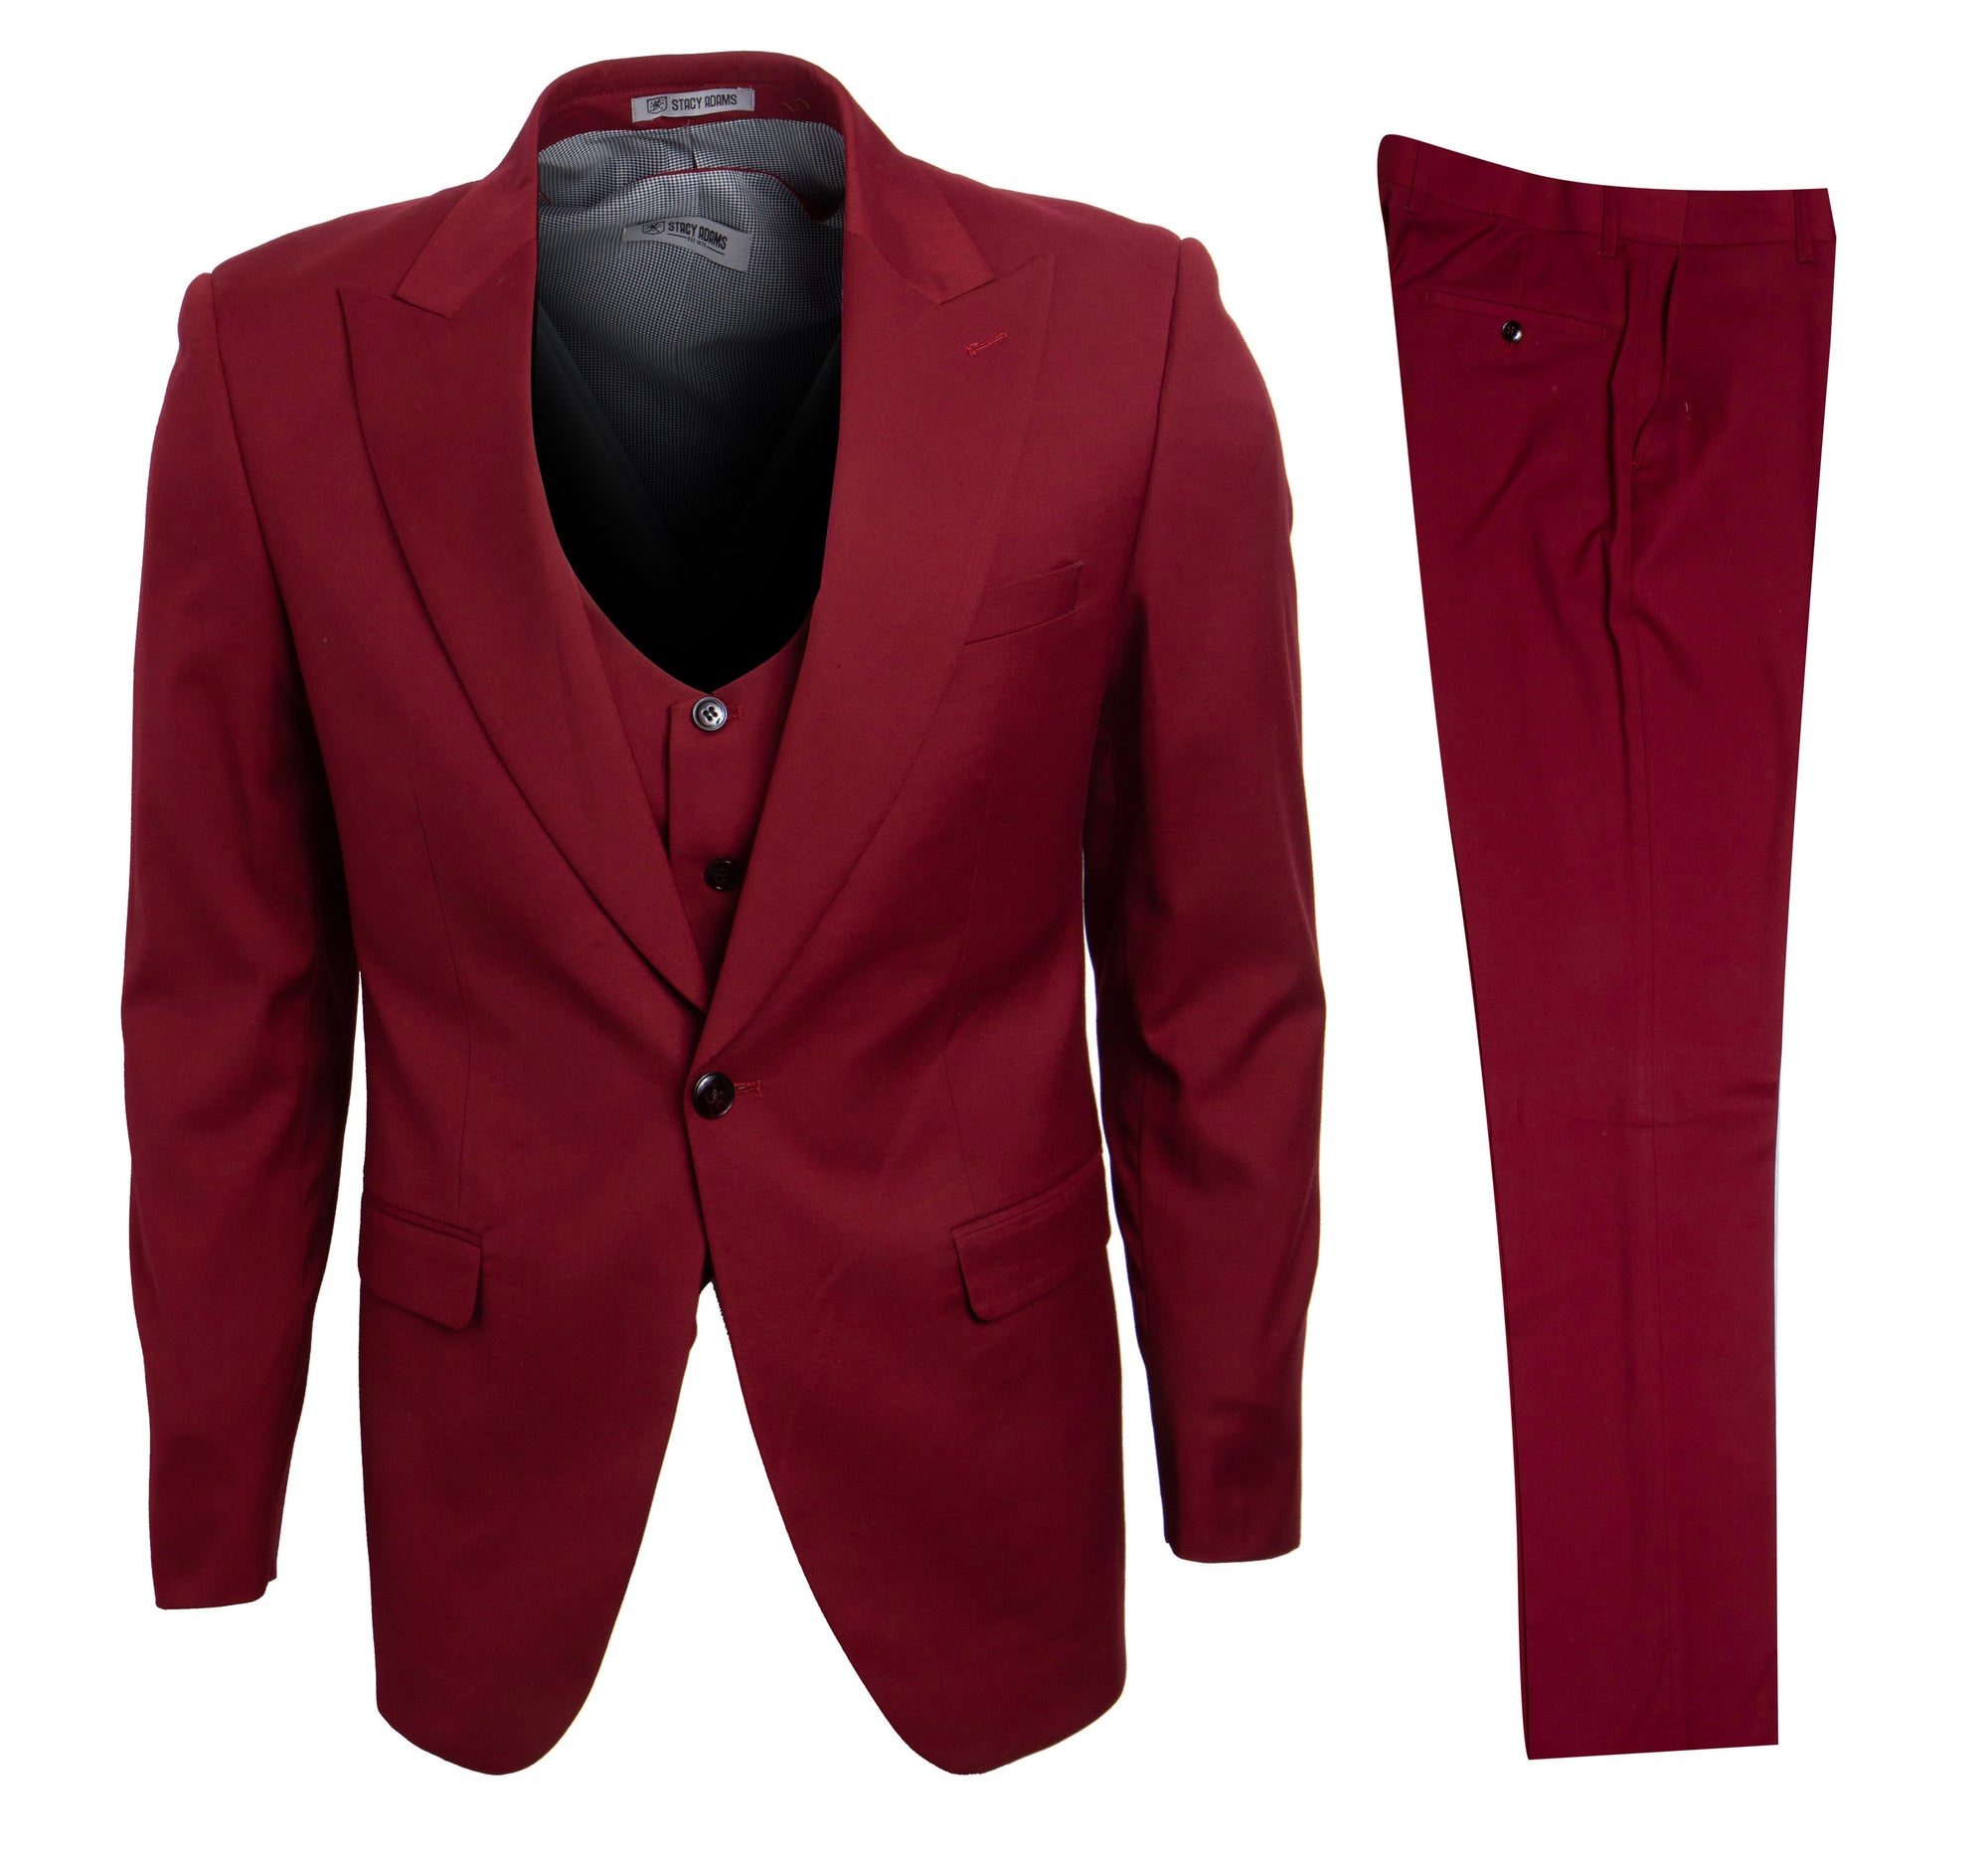 Men's Cherry Red Stacy Adams Suit